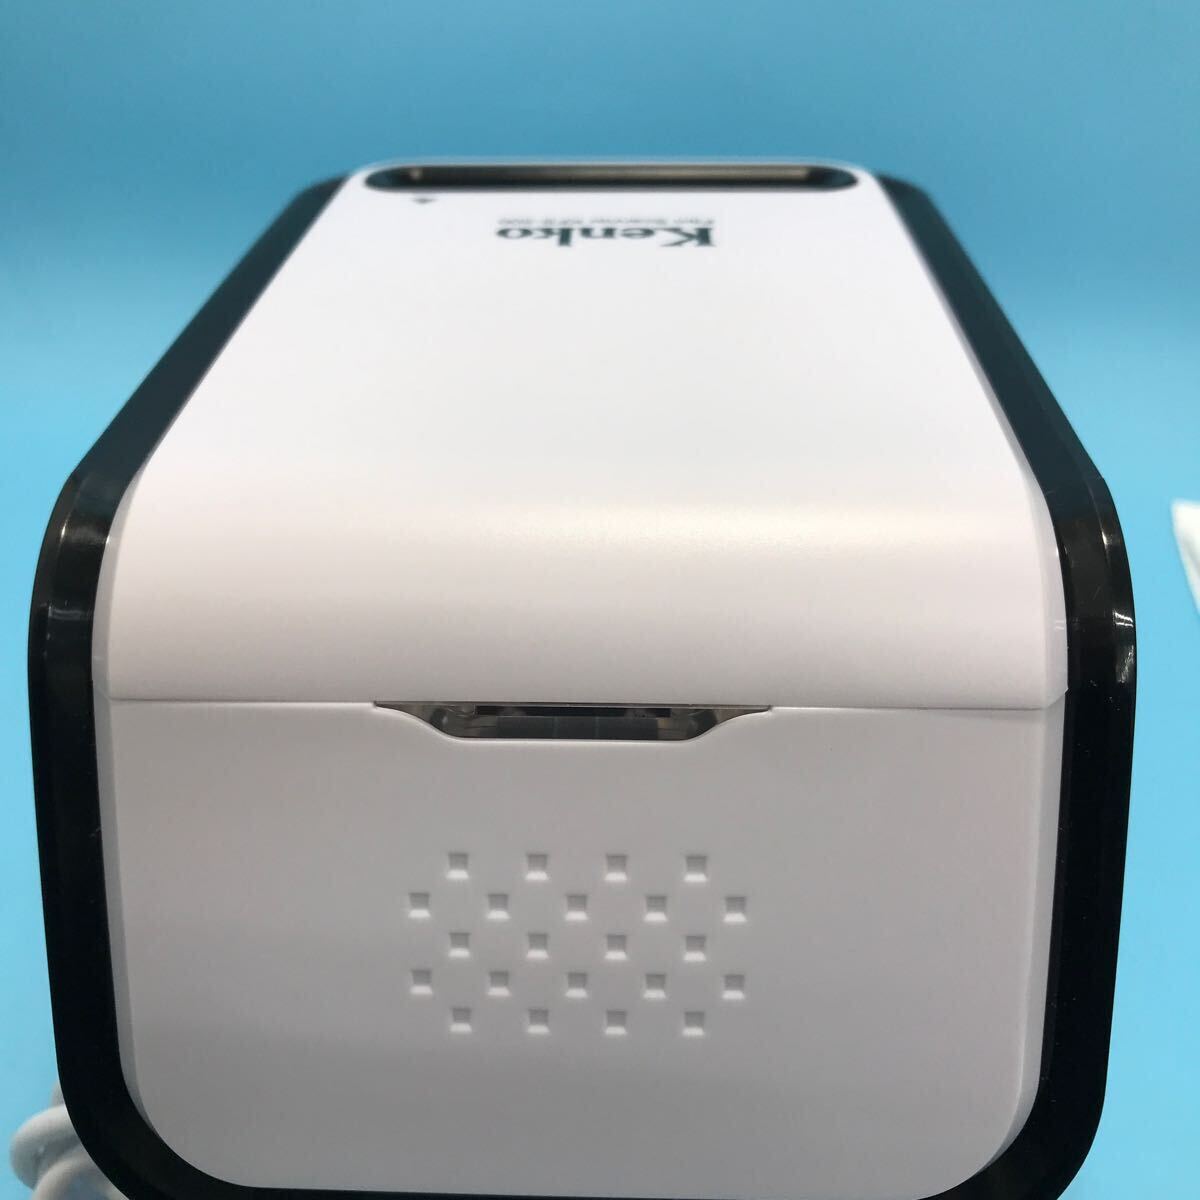 sa) [ электризация проверка только ] Kenko Kenko плёнка сканер камера для сопутствующие предметы KFS-500 белый управление M